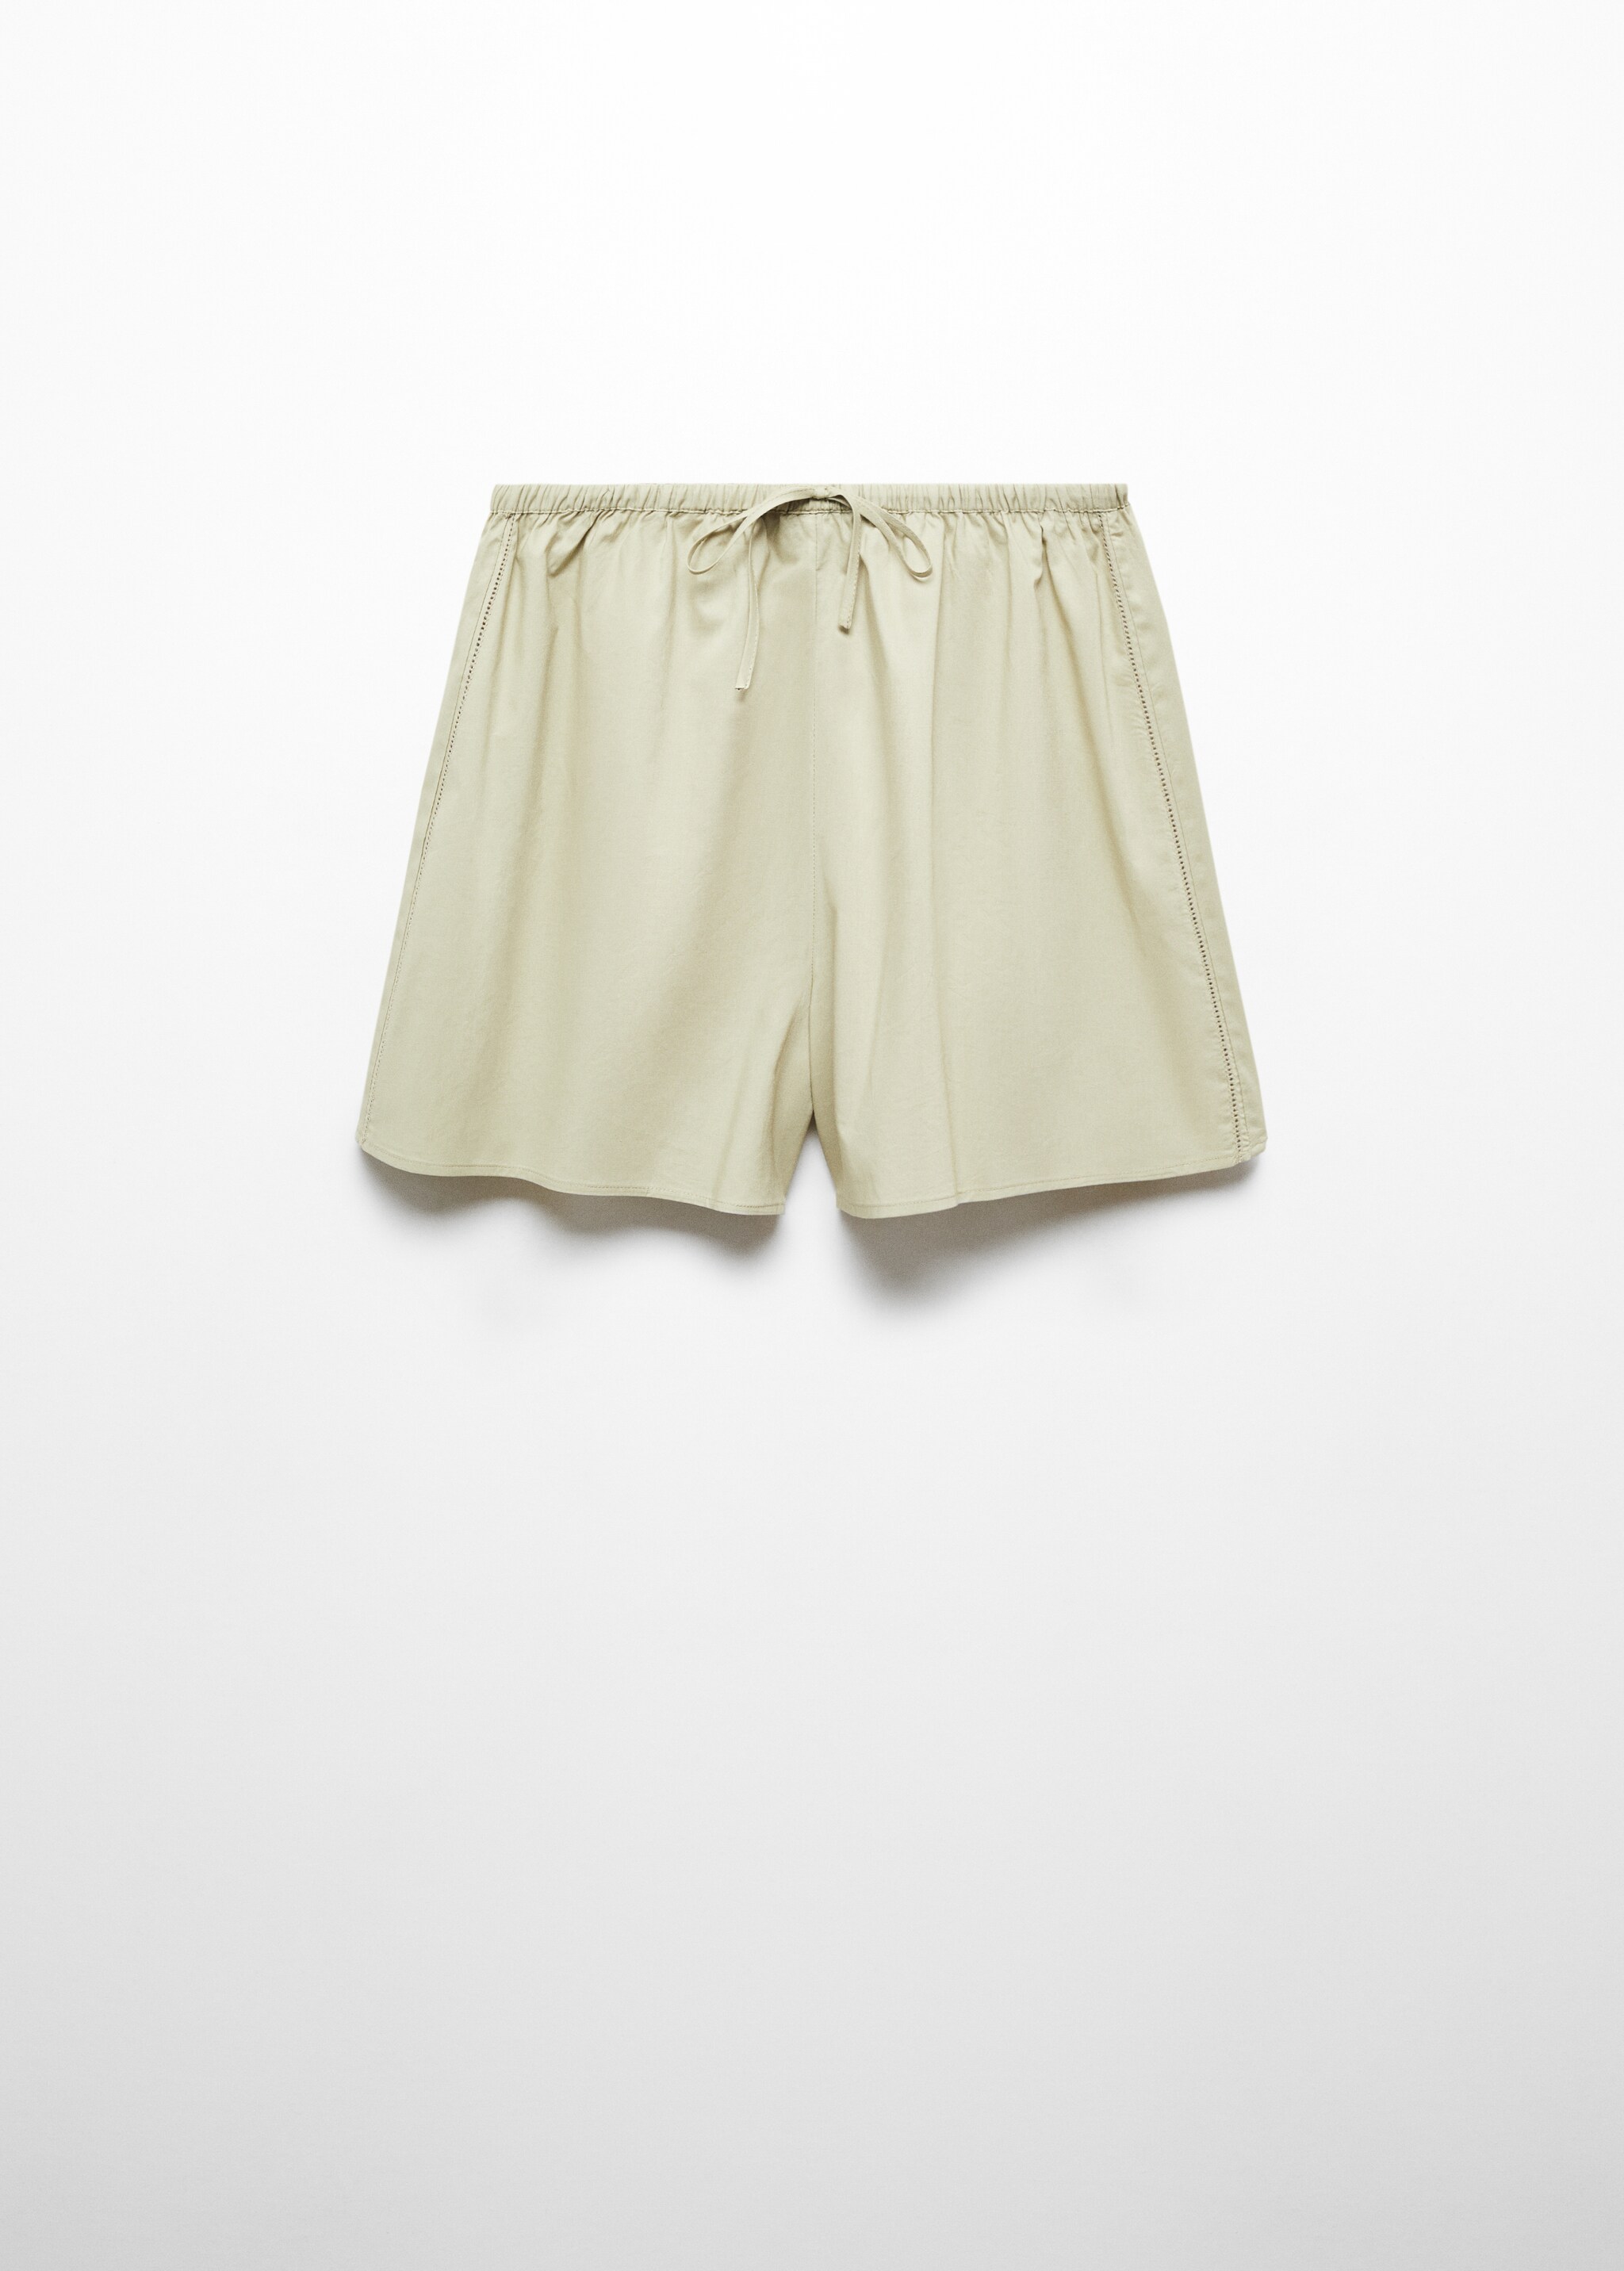 Shorts pijama algodón cintura elástica - Artículo sin modelo